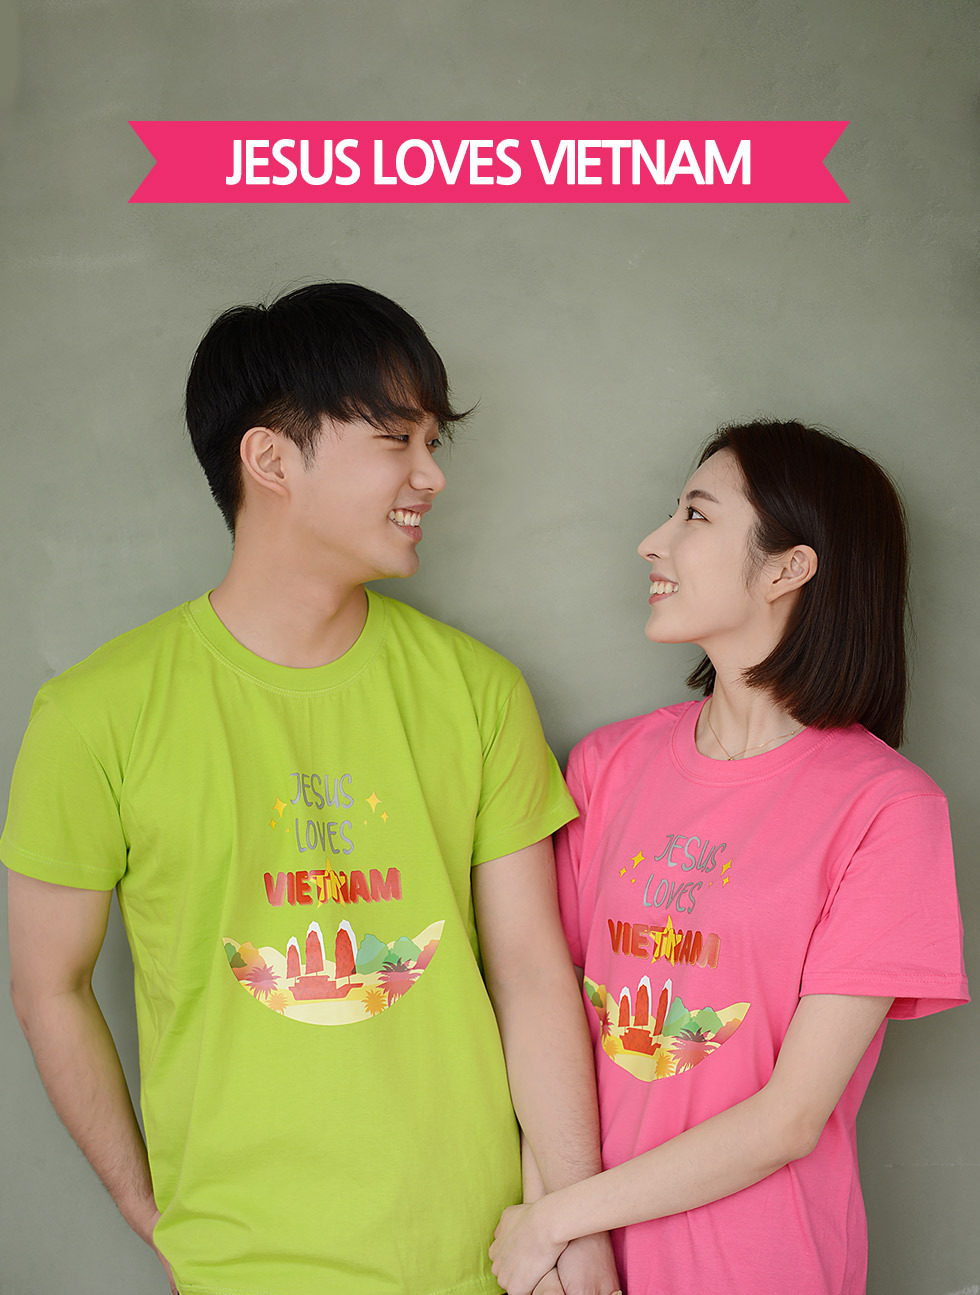 교회 단체티셔츠 베트남 선교티 (Jesus loves Vietnam) - 미션트립 단체 성인티셔츠(베트남 선교) 